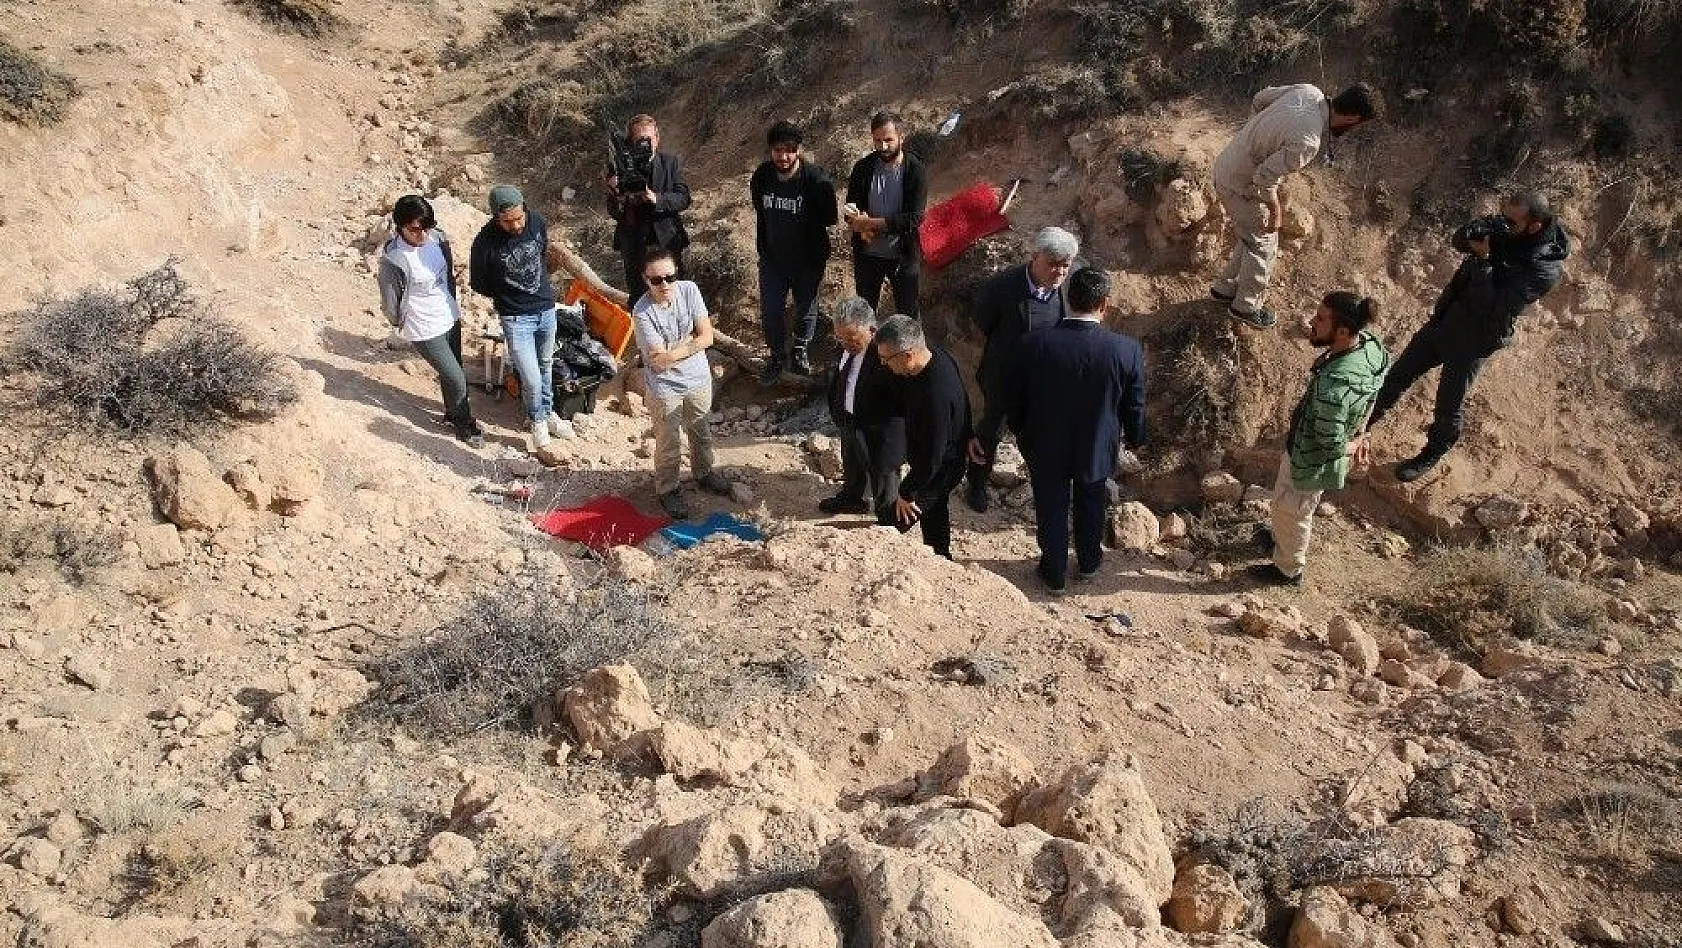 Ağırnas bölgesinde arkeolojik kazı çalışması başladı
